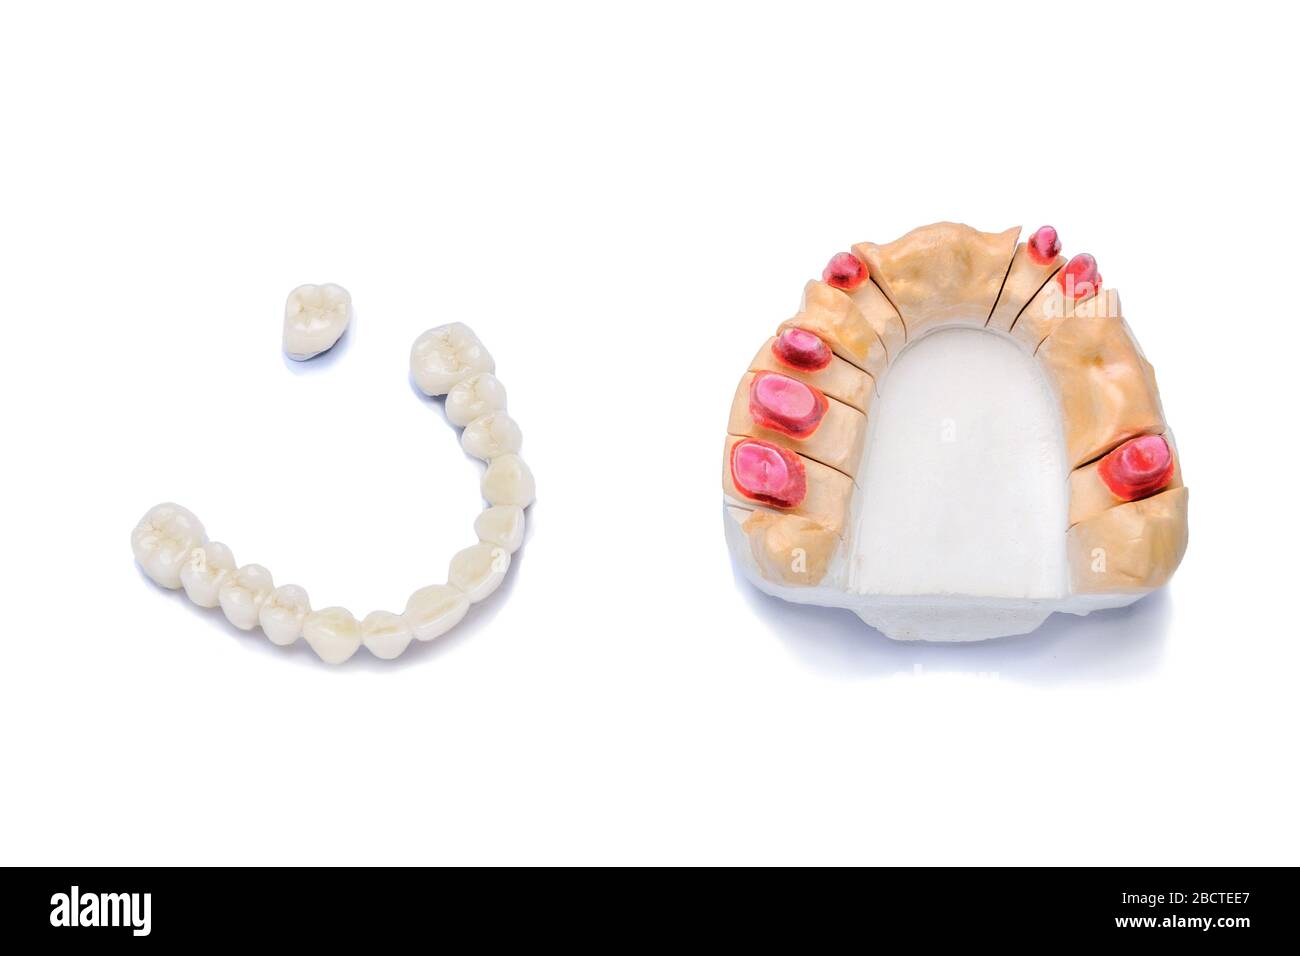 Künstliche Keramik Kronen und Brücken mit einem Gipsmodell der Zähne des Oberkiefers isoliert auf weißem Hintergrund. Konzept der orthopädischen Zahnstr Stockfoto